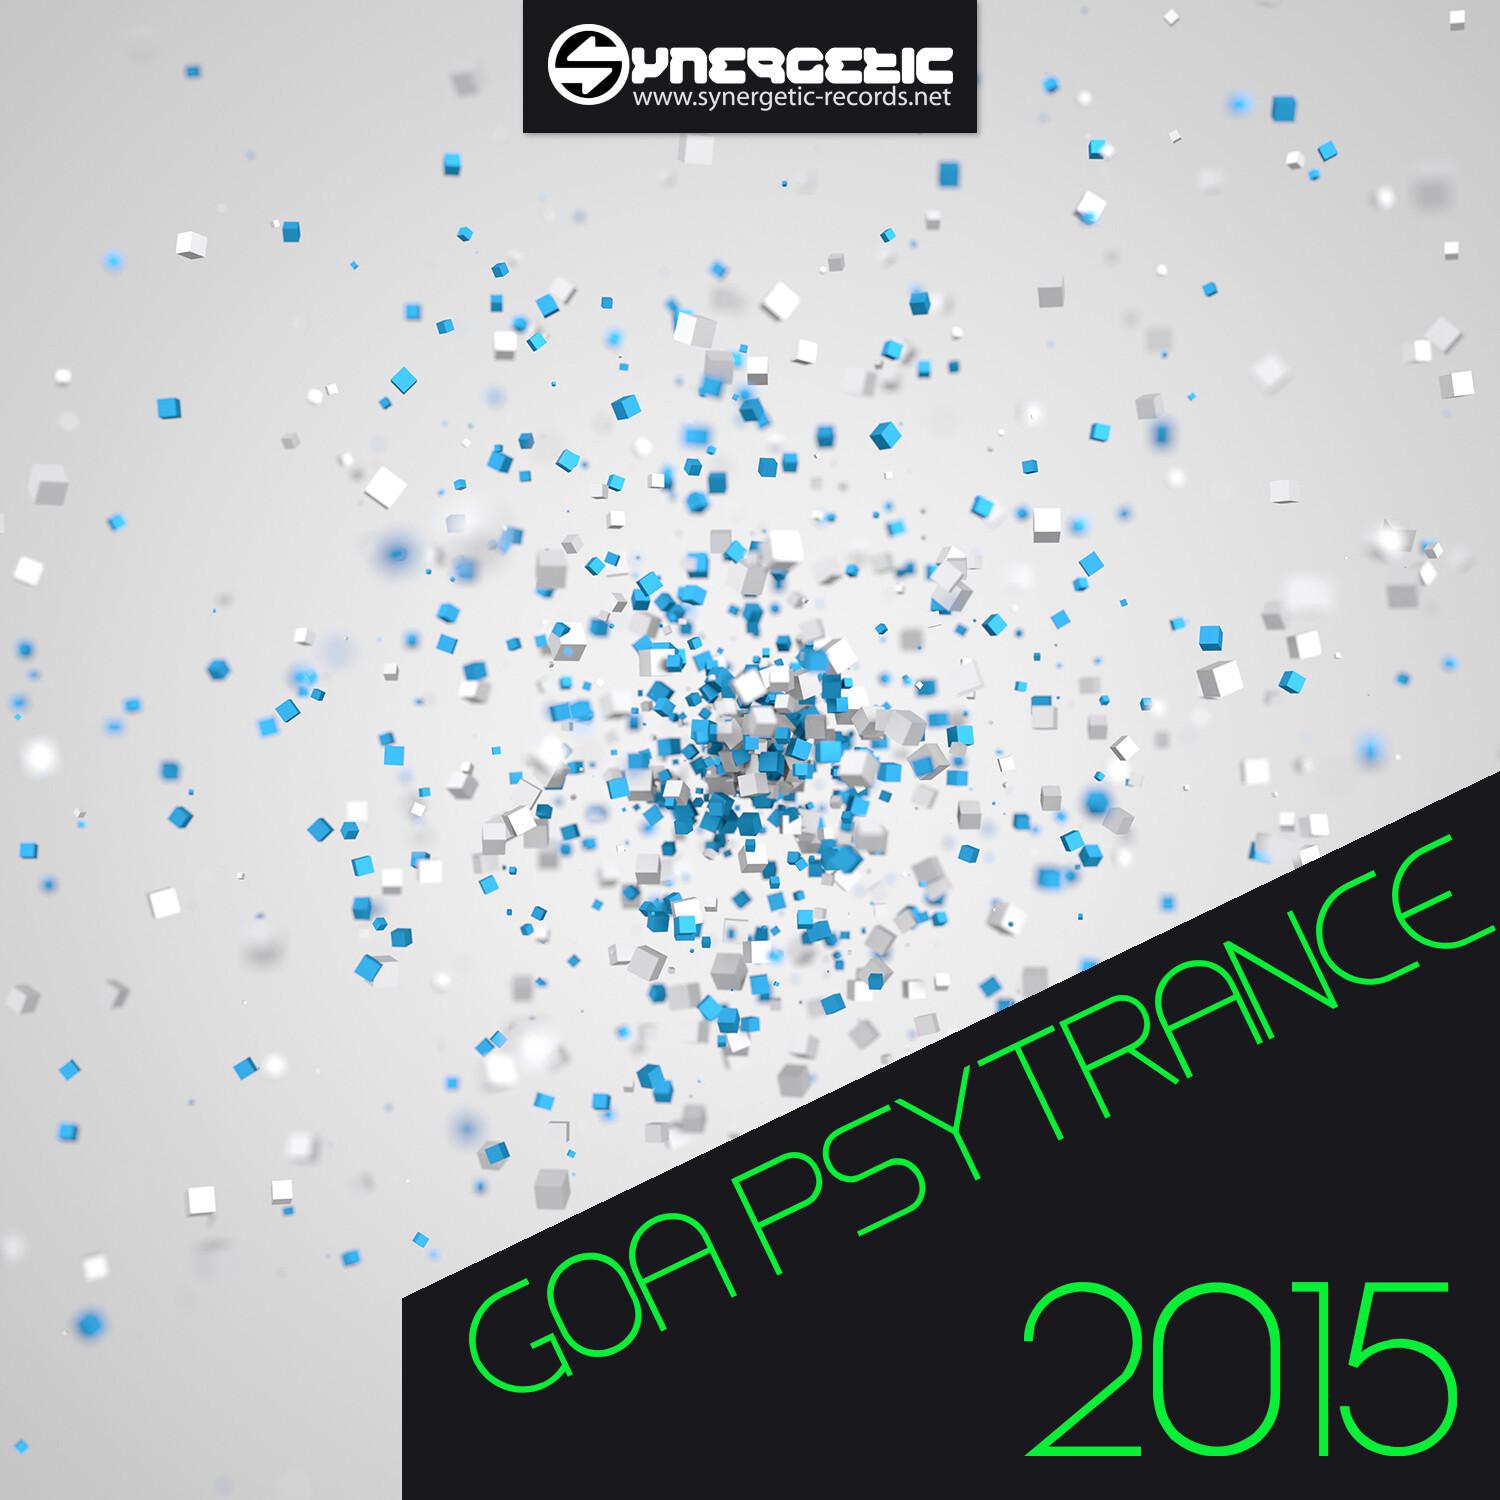 Goa PsyTrance 2015